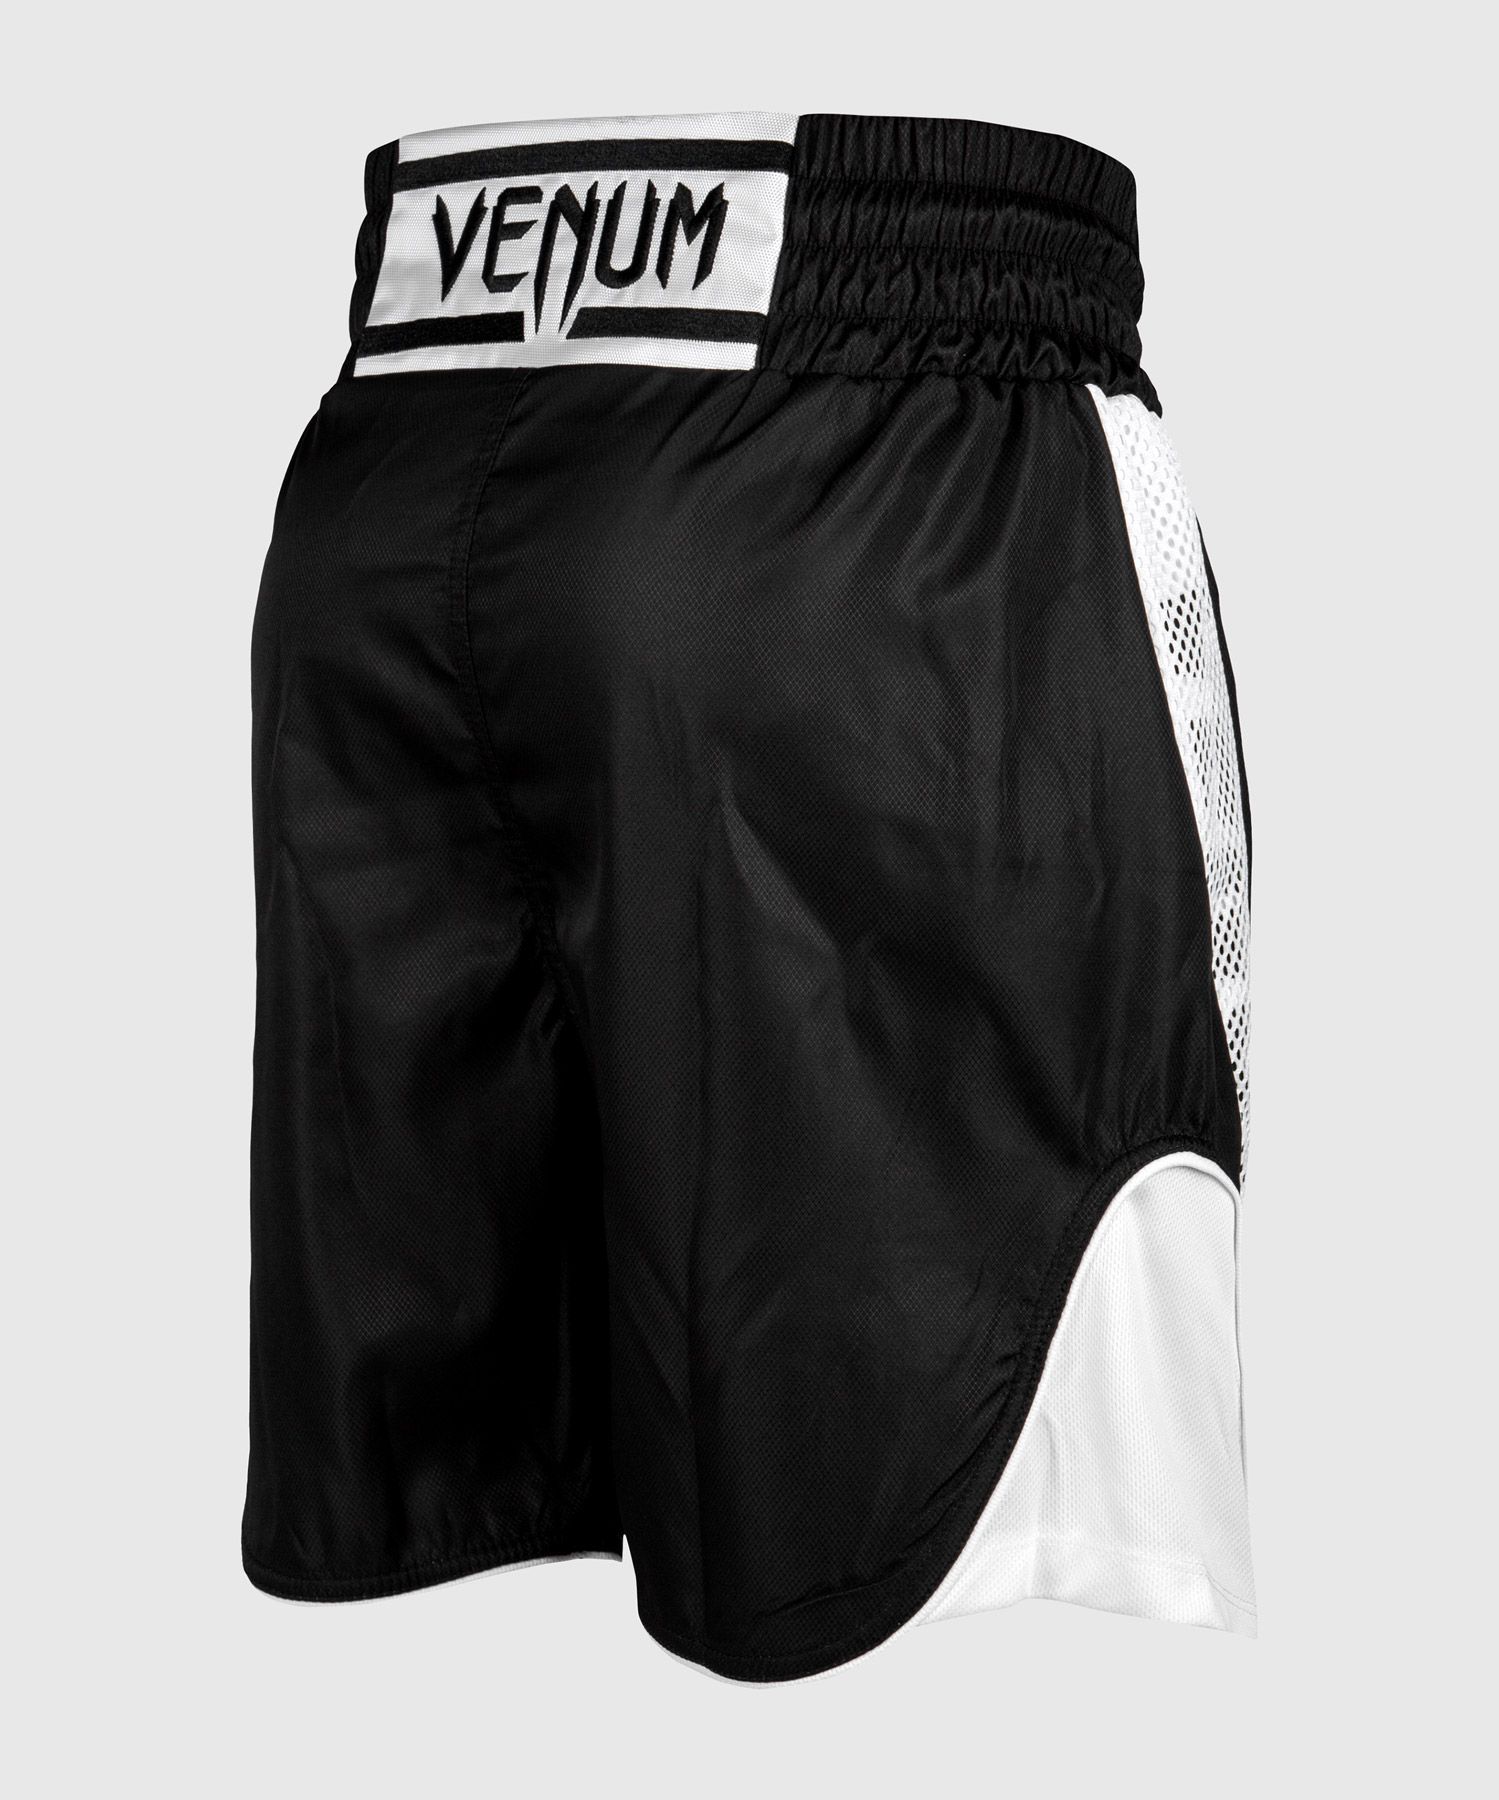 Short De Boxe Venum Homme  Short de boxe Venum Elite - Noir/Blanc